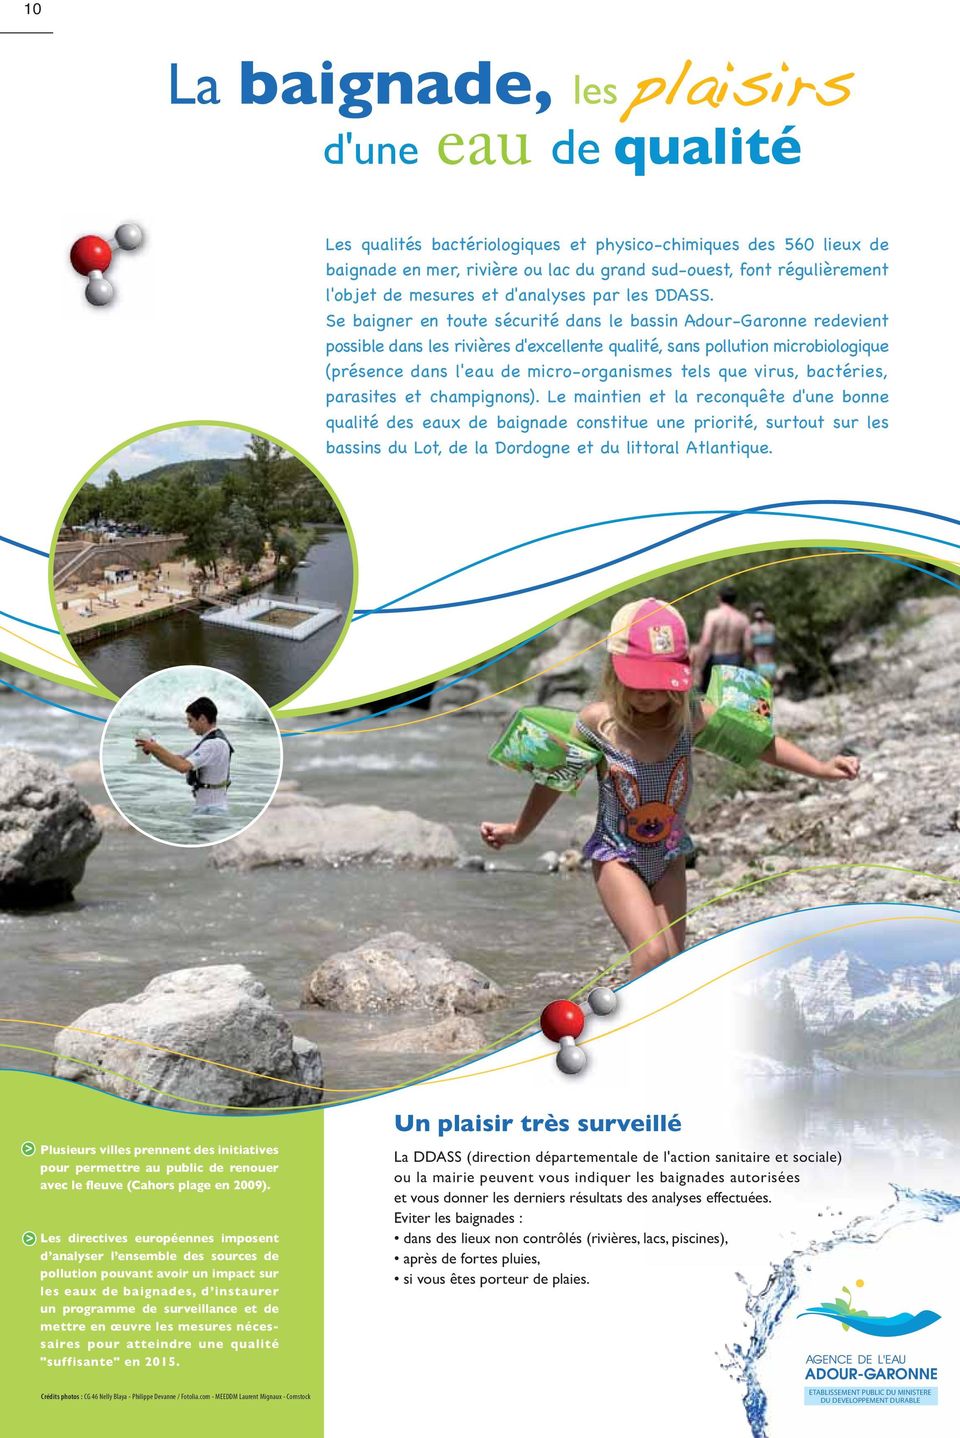 Se baigner en toute sécurité dans le bassin Adour-Garonne redevient possible dans les rivières d'excellente qualité, sans pollution microbiologique (présence dans l'eau de micro-organismes tels que